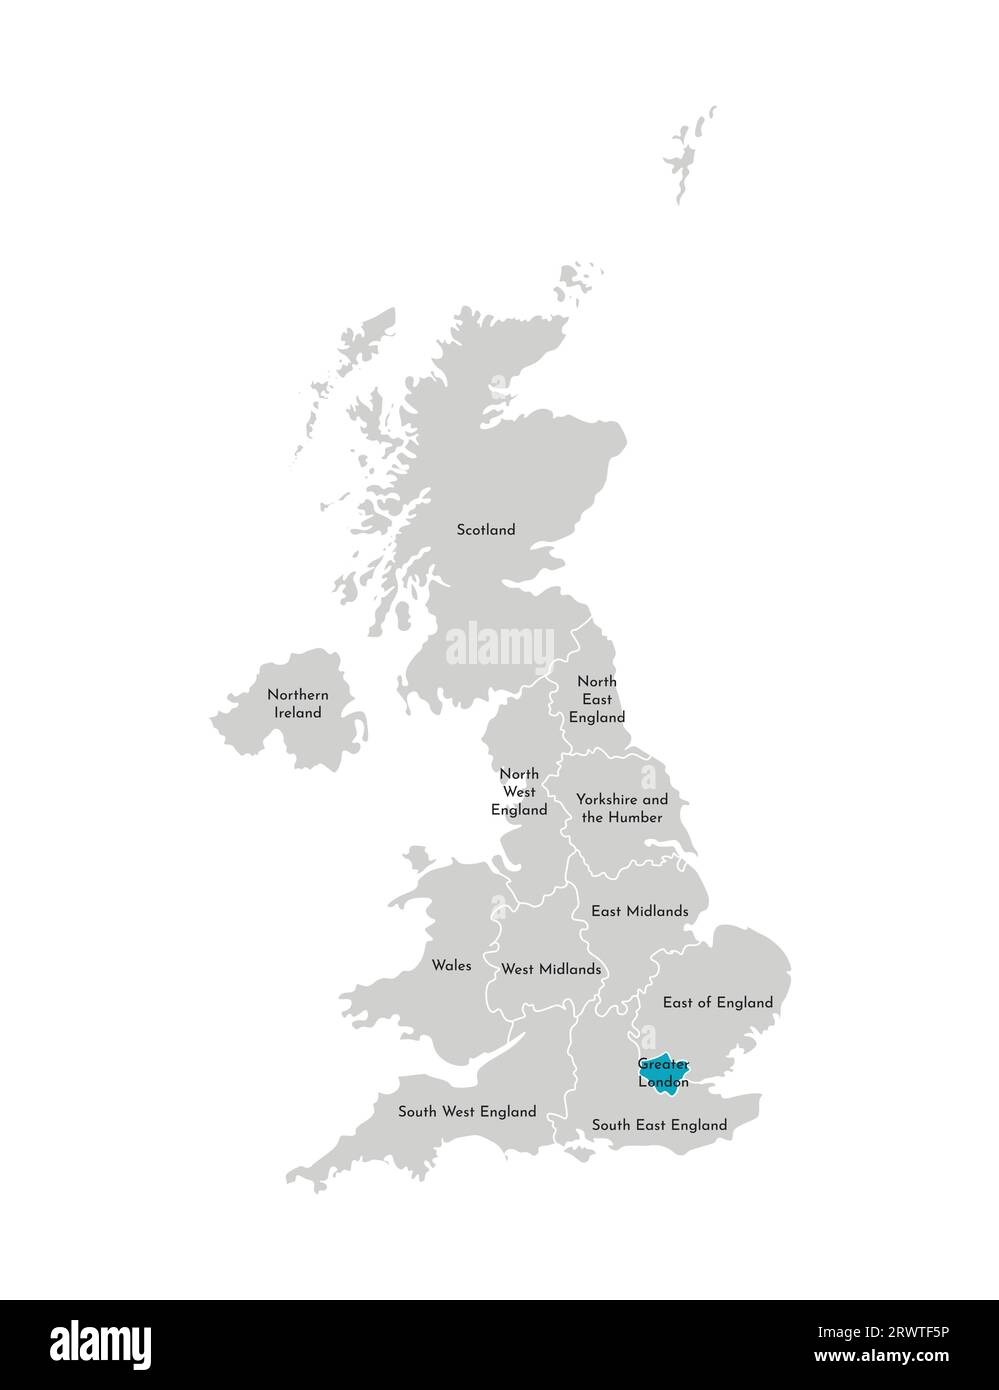 Vektor-isolierte Illustration einer vereinfachten Verwaltungskarte des Vereinigten Königreichs (UK). Blaue Form von Greater London. Grenzen und Namen der regio Stock Vektor